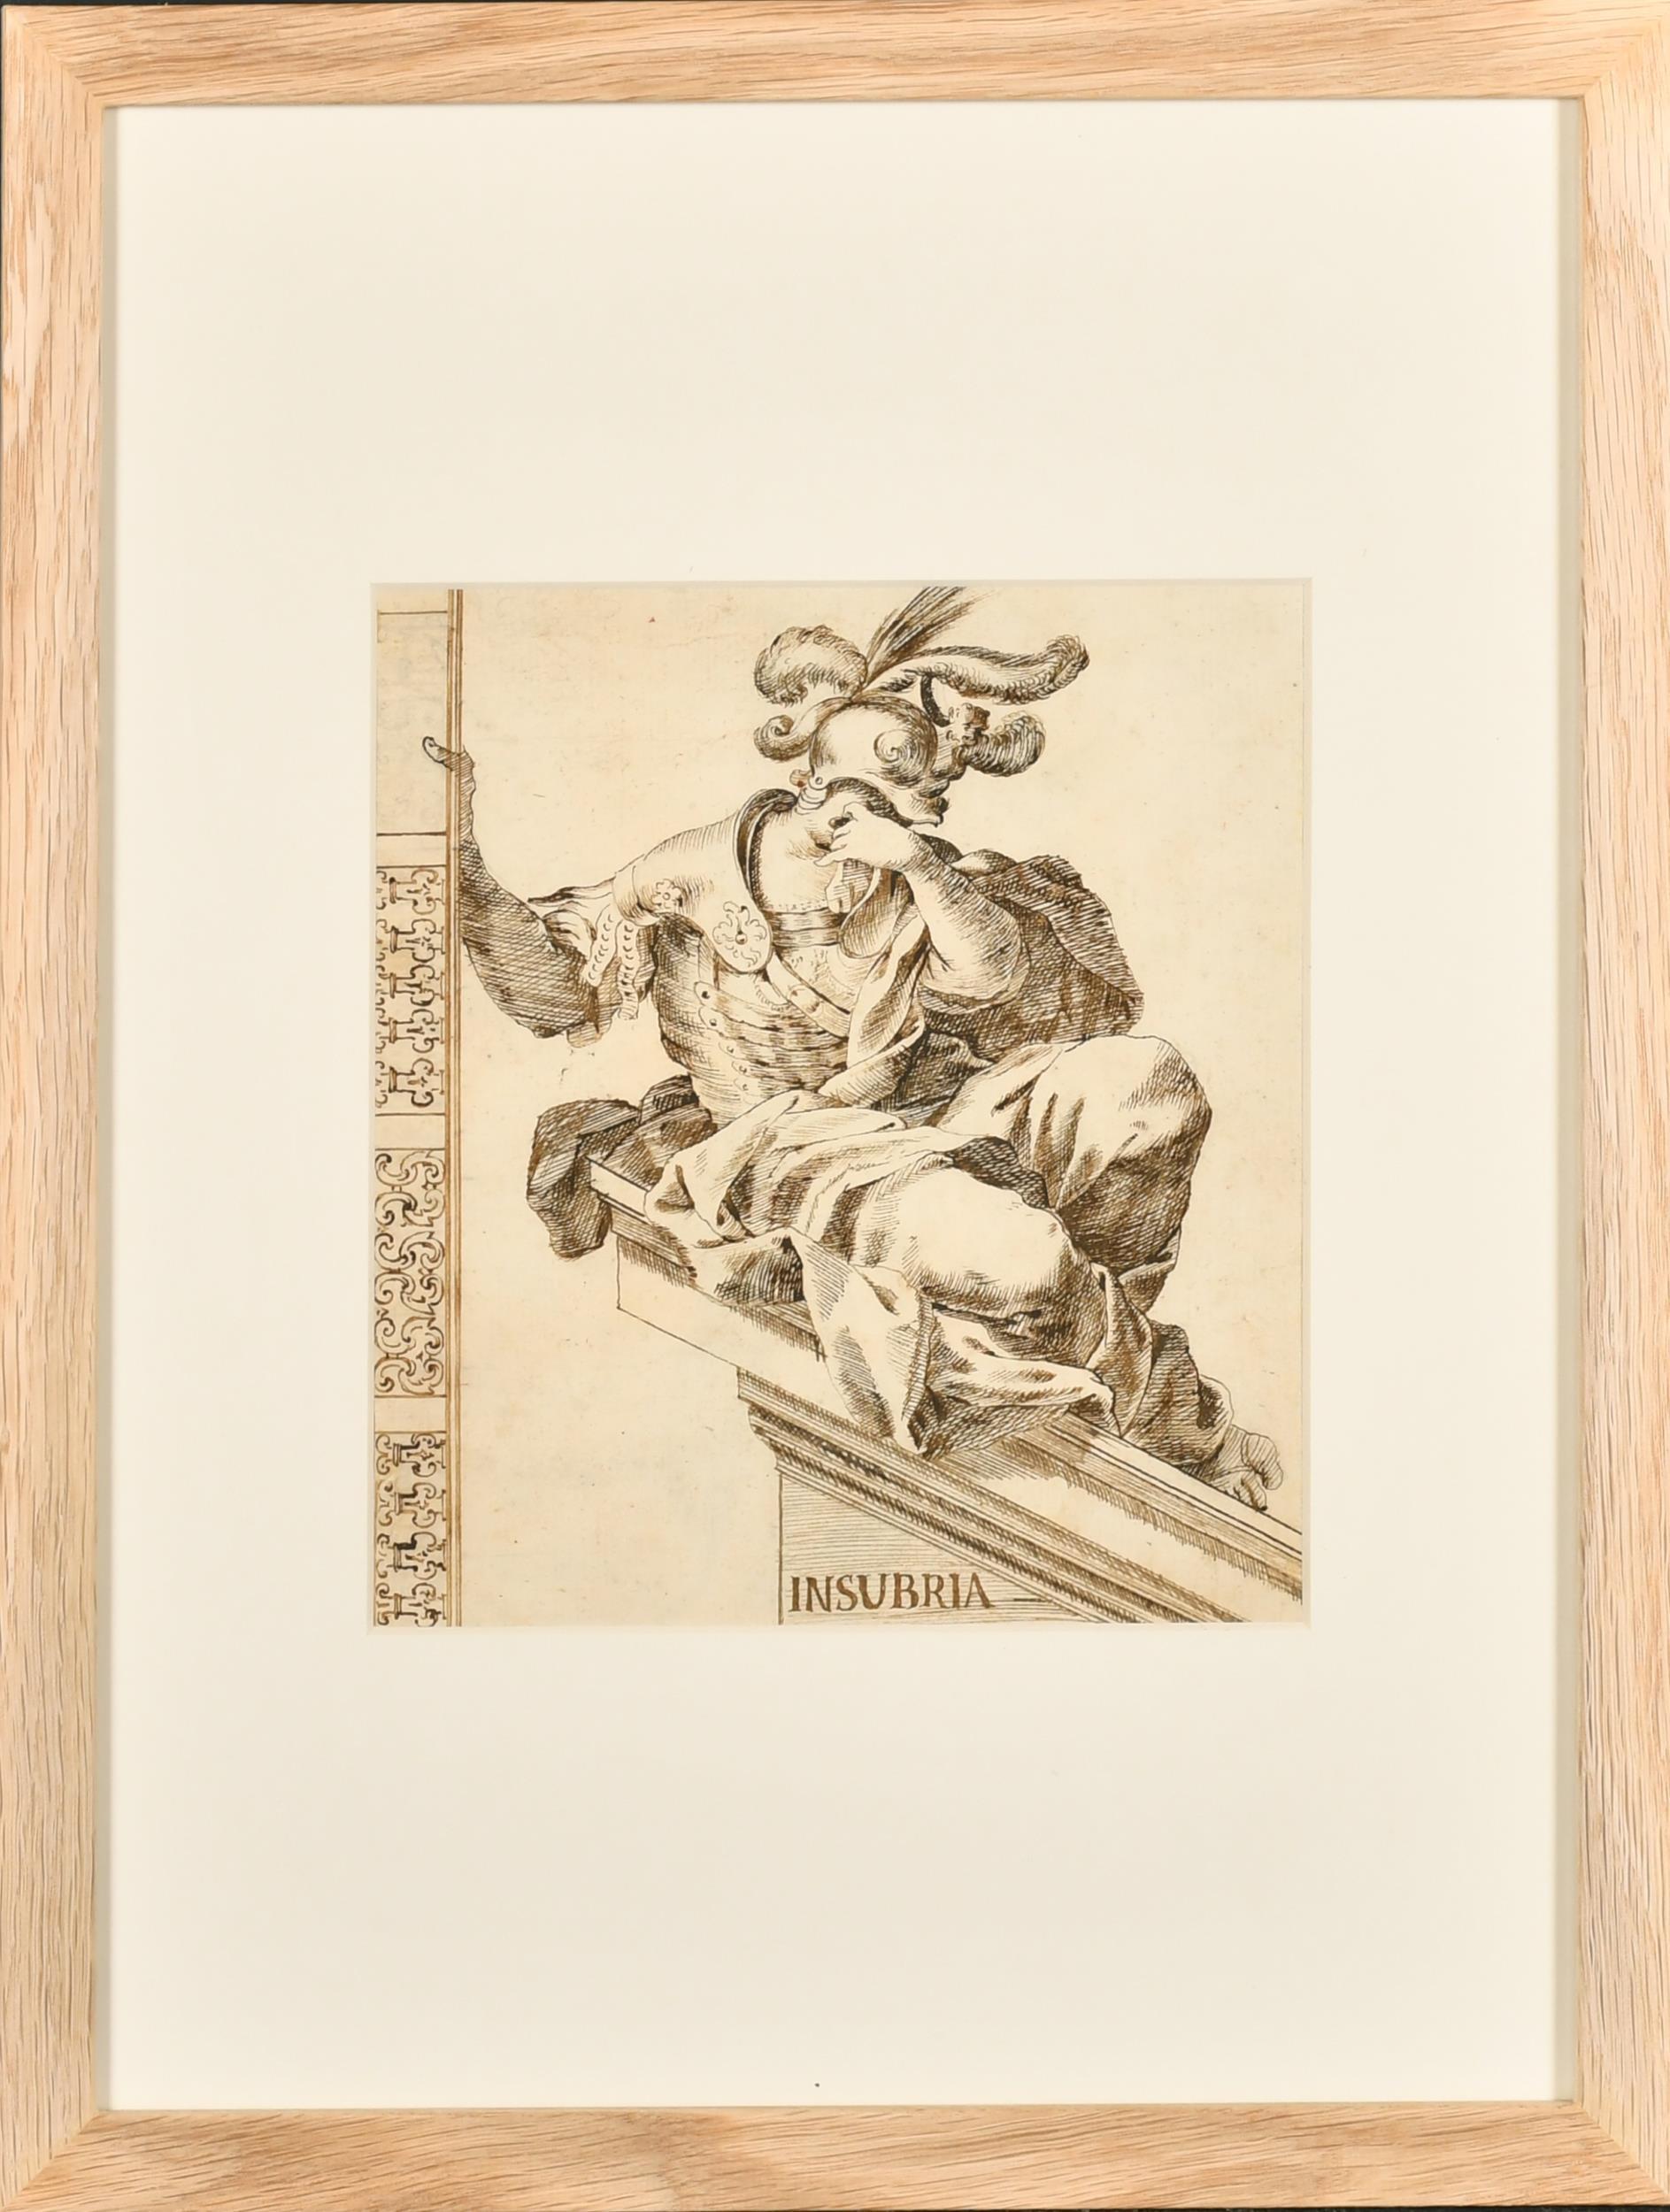 Italienische alte Meister-Tinten- und Waschzeichnung, römische Allegorische Insubria, 1700er Jahre – Art von 18thC Italian Old Master